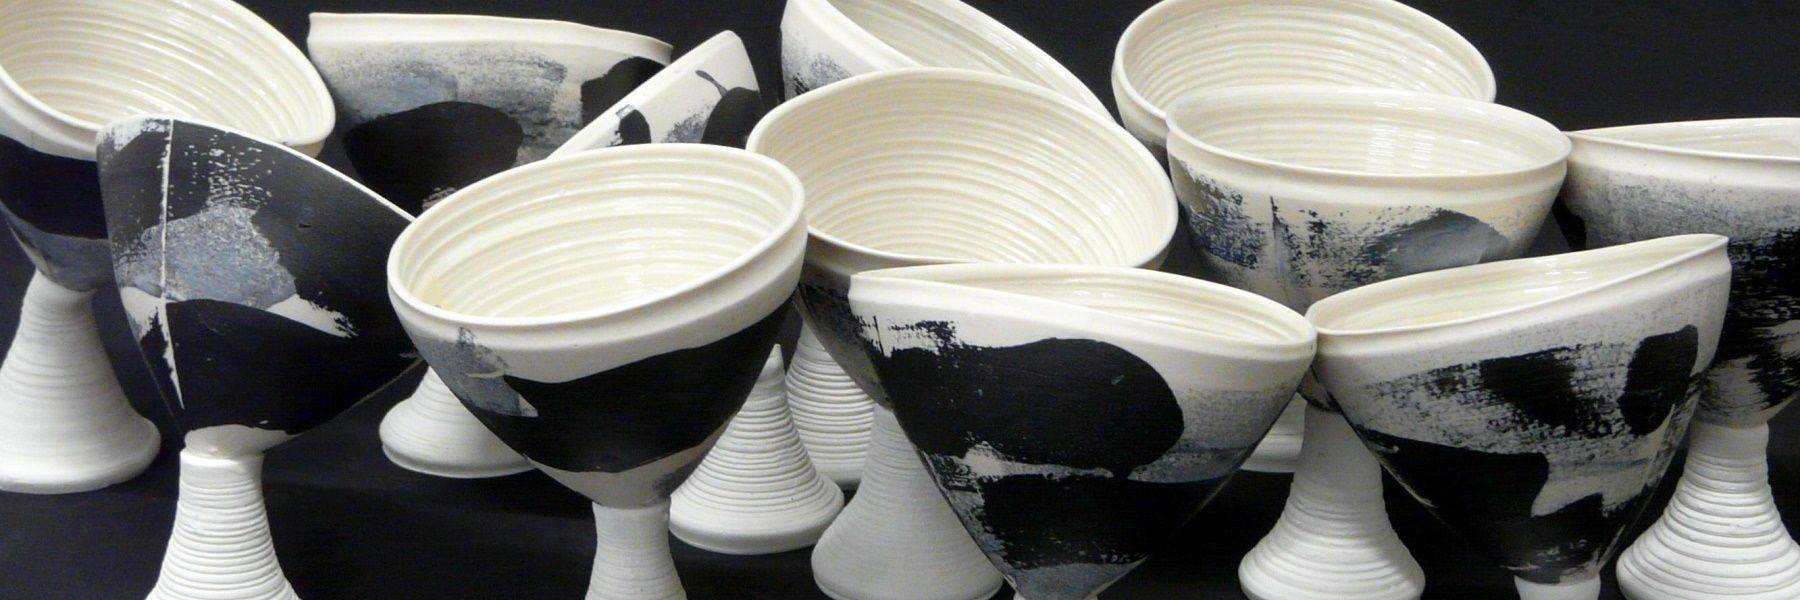 La pieza consta de un conjunto de copas de cerámica apiladas, colores blancos y negros